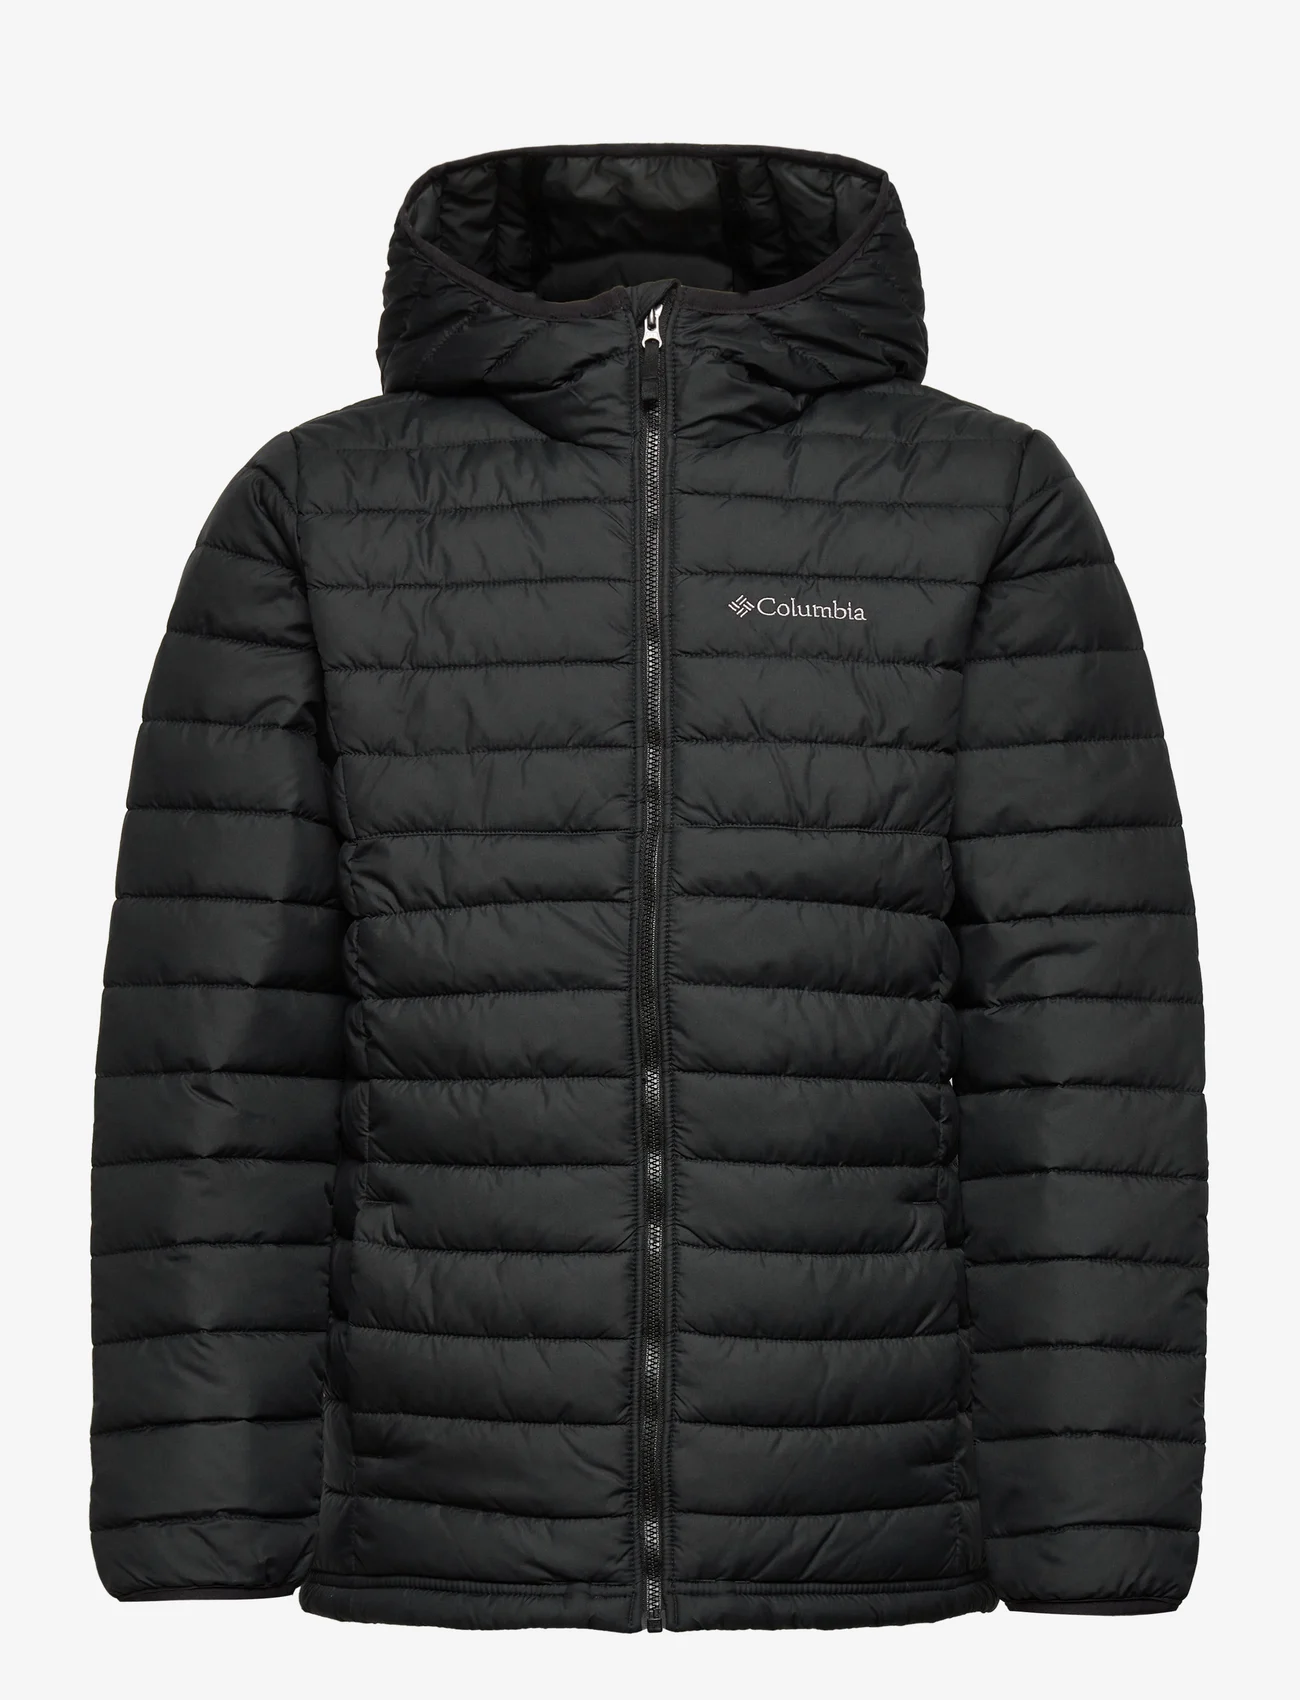 Columbia Sportswear - Powder Lite Boys Hooded Jacket - geïsoleerde jassen - black - 0